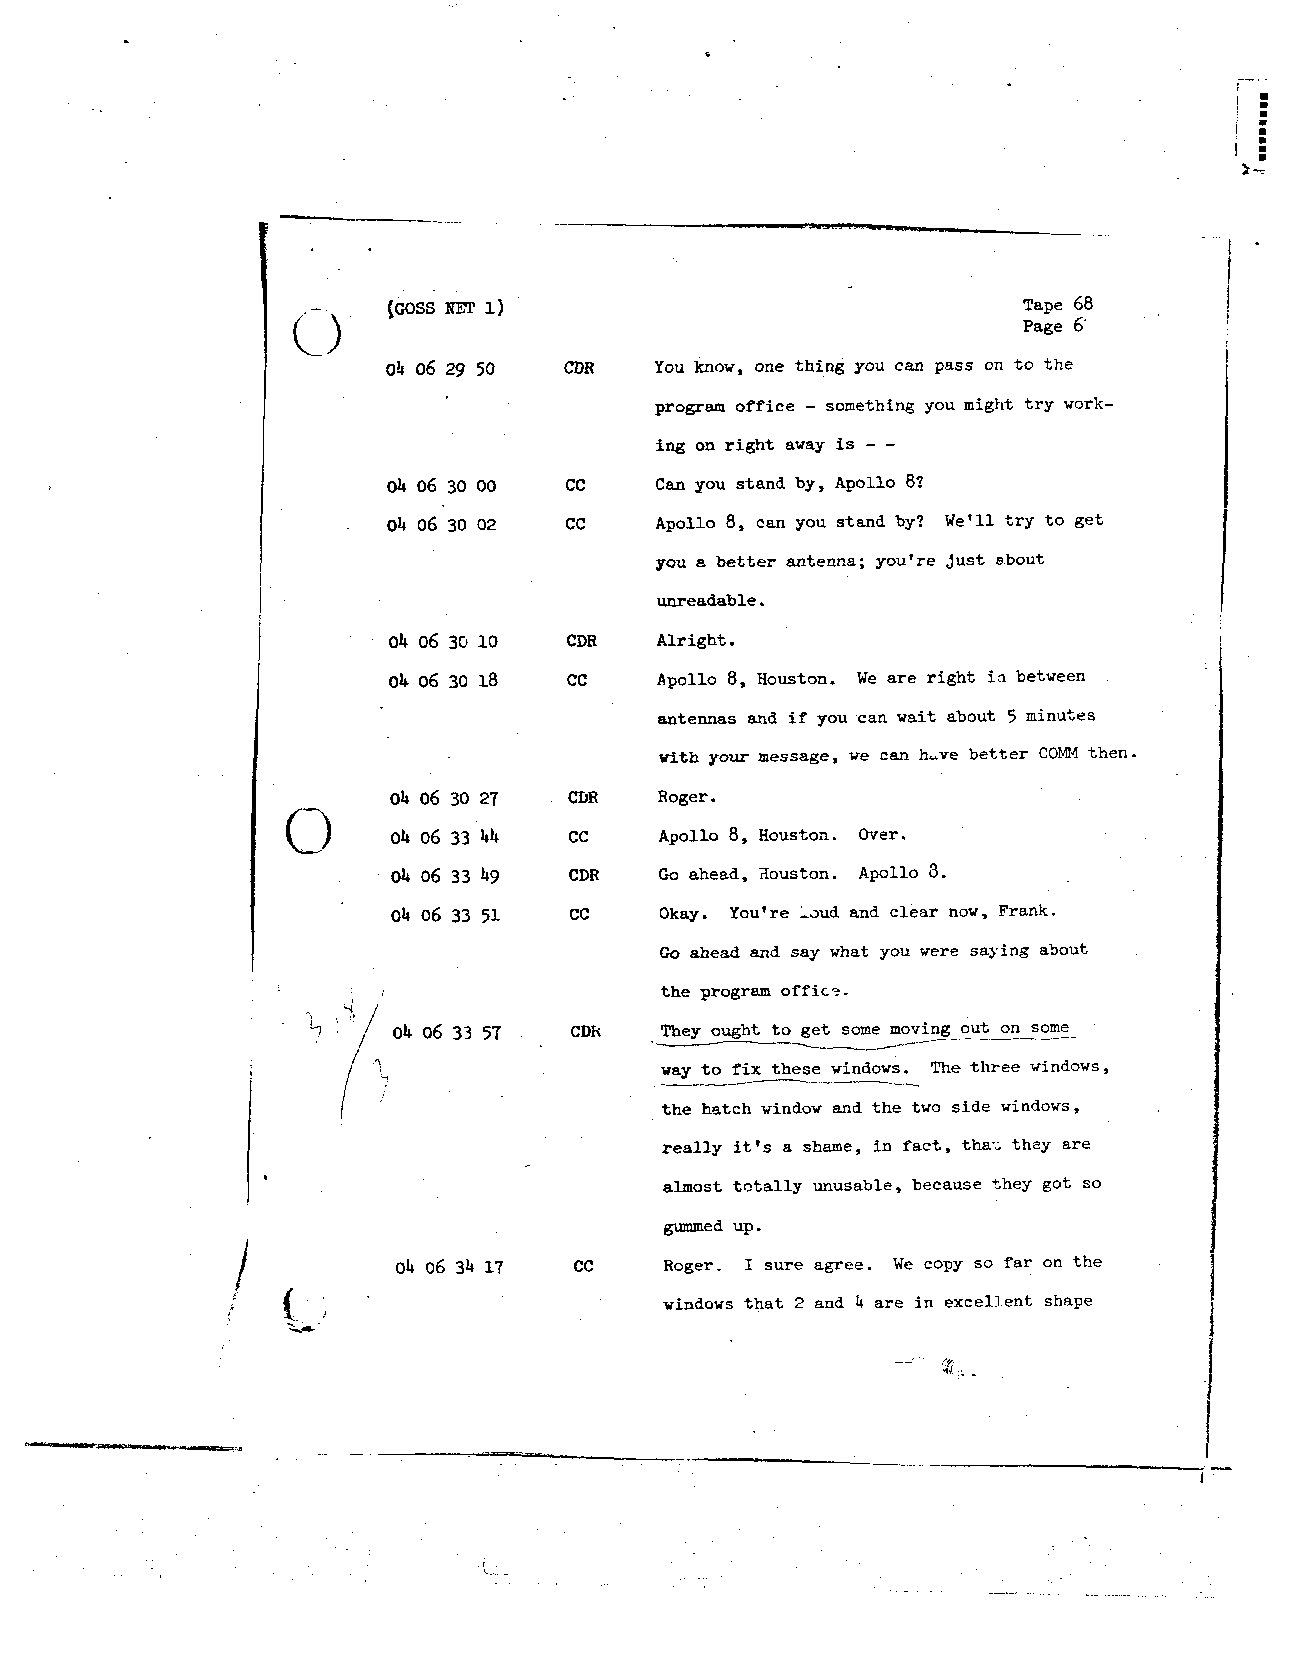 Page 538 of Apollo 8’s original transcript